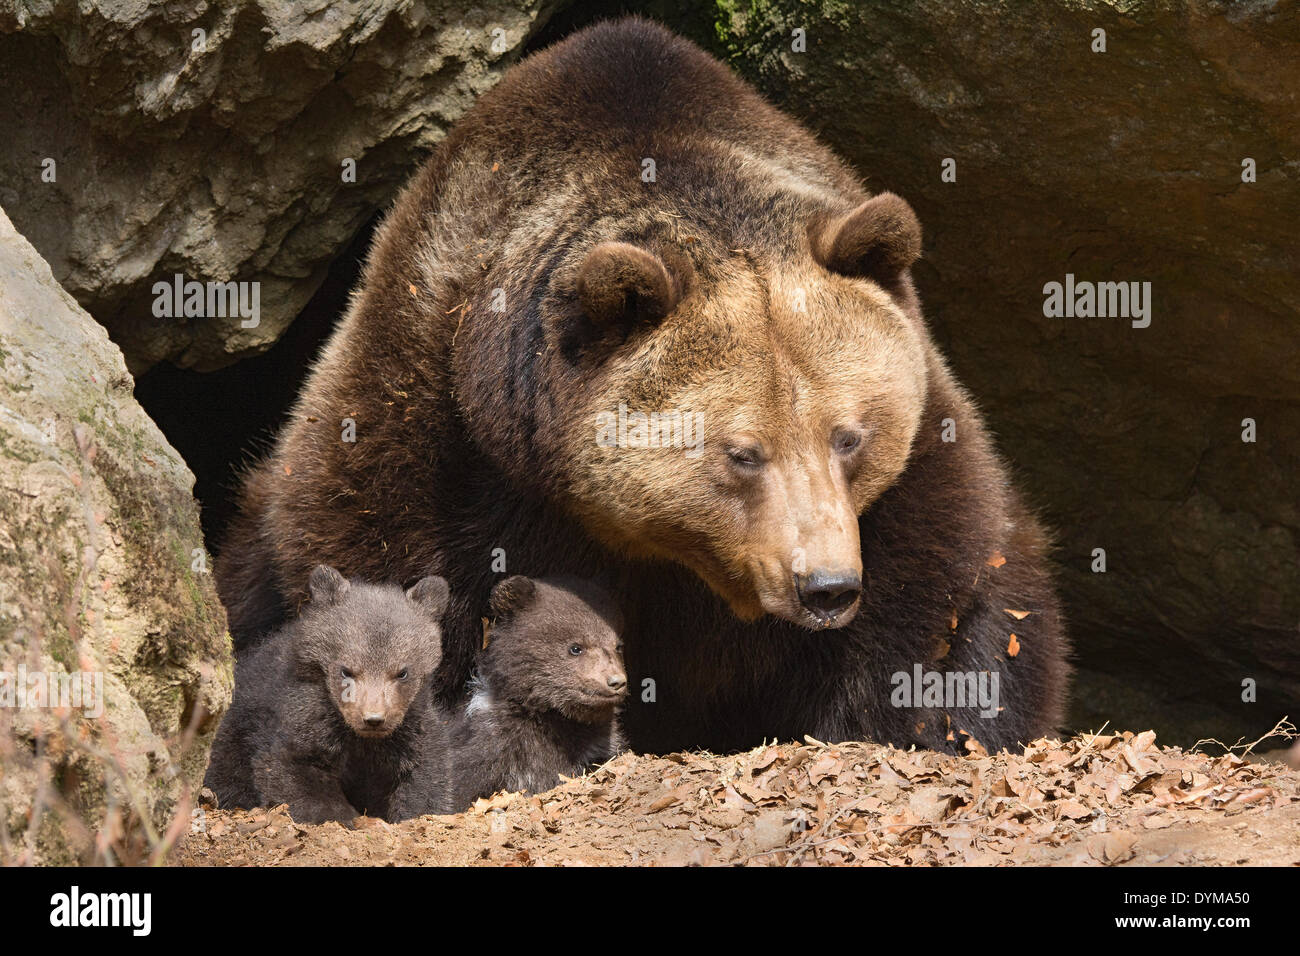 Unión oso pardo (Ursus arctos) madre con cachorros, 3 meses en cautiverio, alojamiento de animales, el Parque Nacional del Bosque Bávaro, Baviera Foto de stock